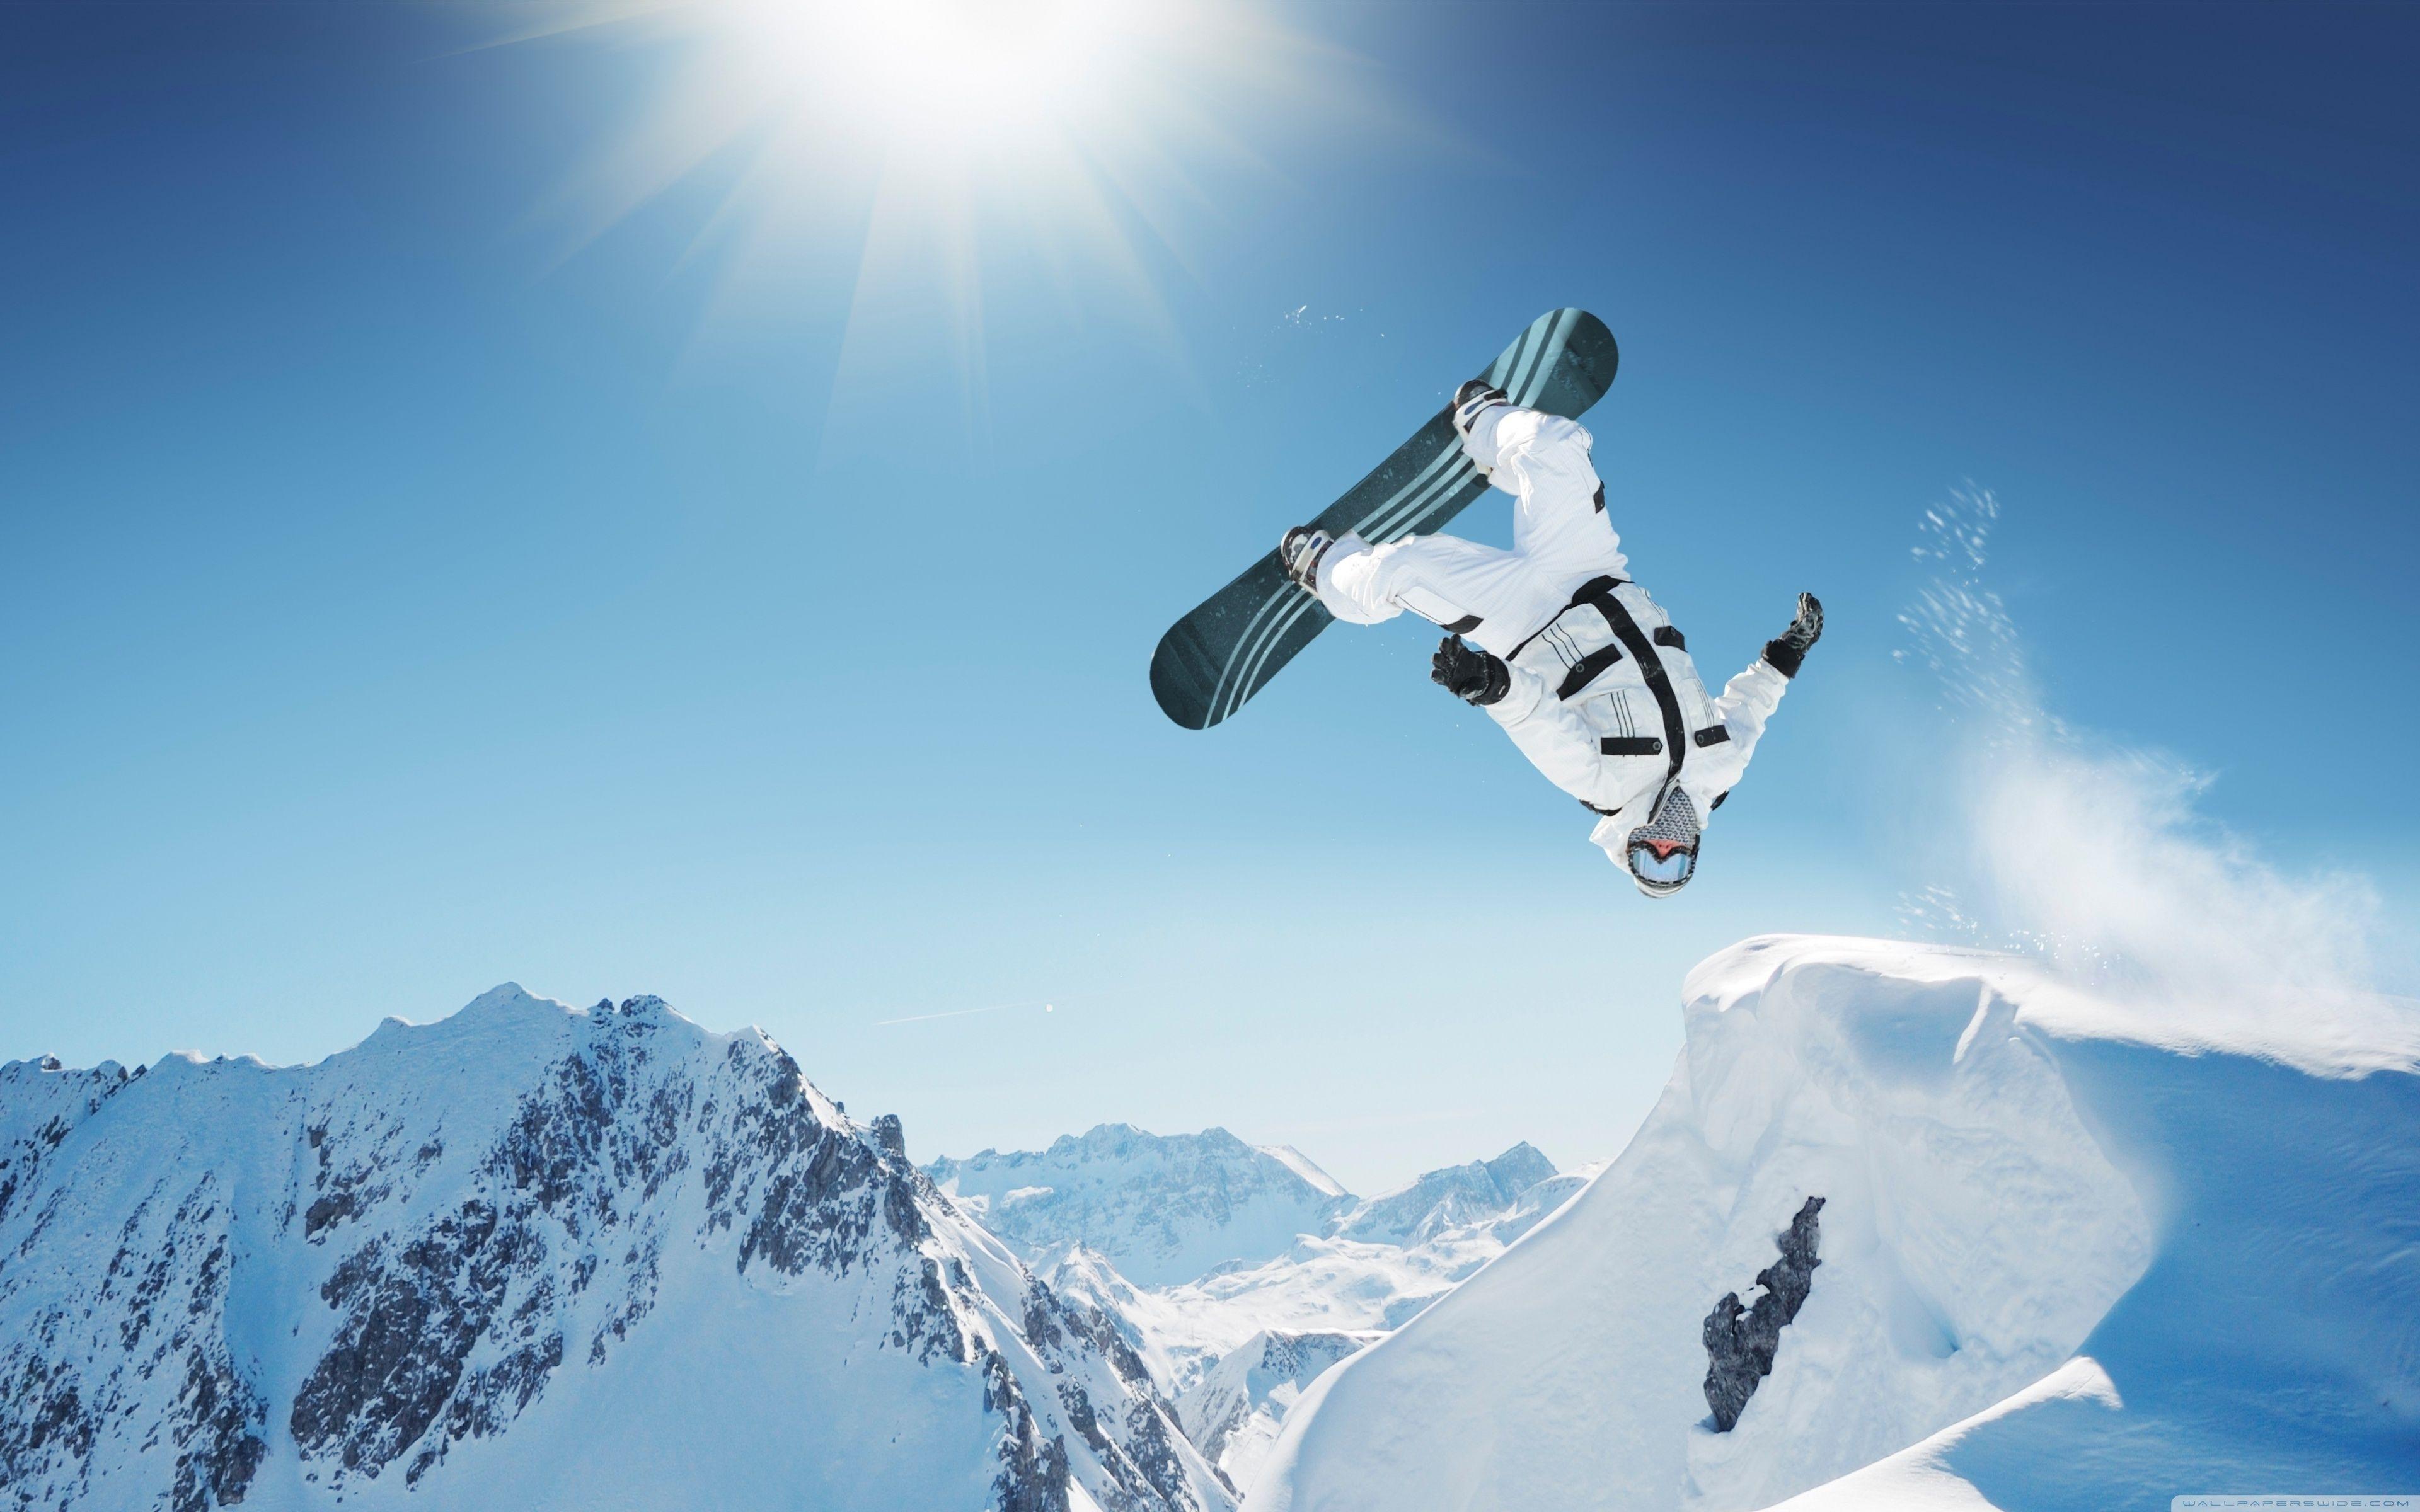 Snowboarding Desktop Wallpapers Top Free Snowboarding Desktop Backgrounds Wallpaperaccess